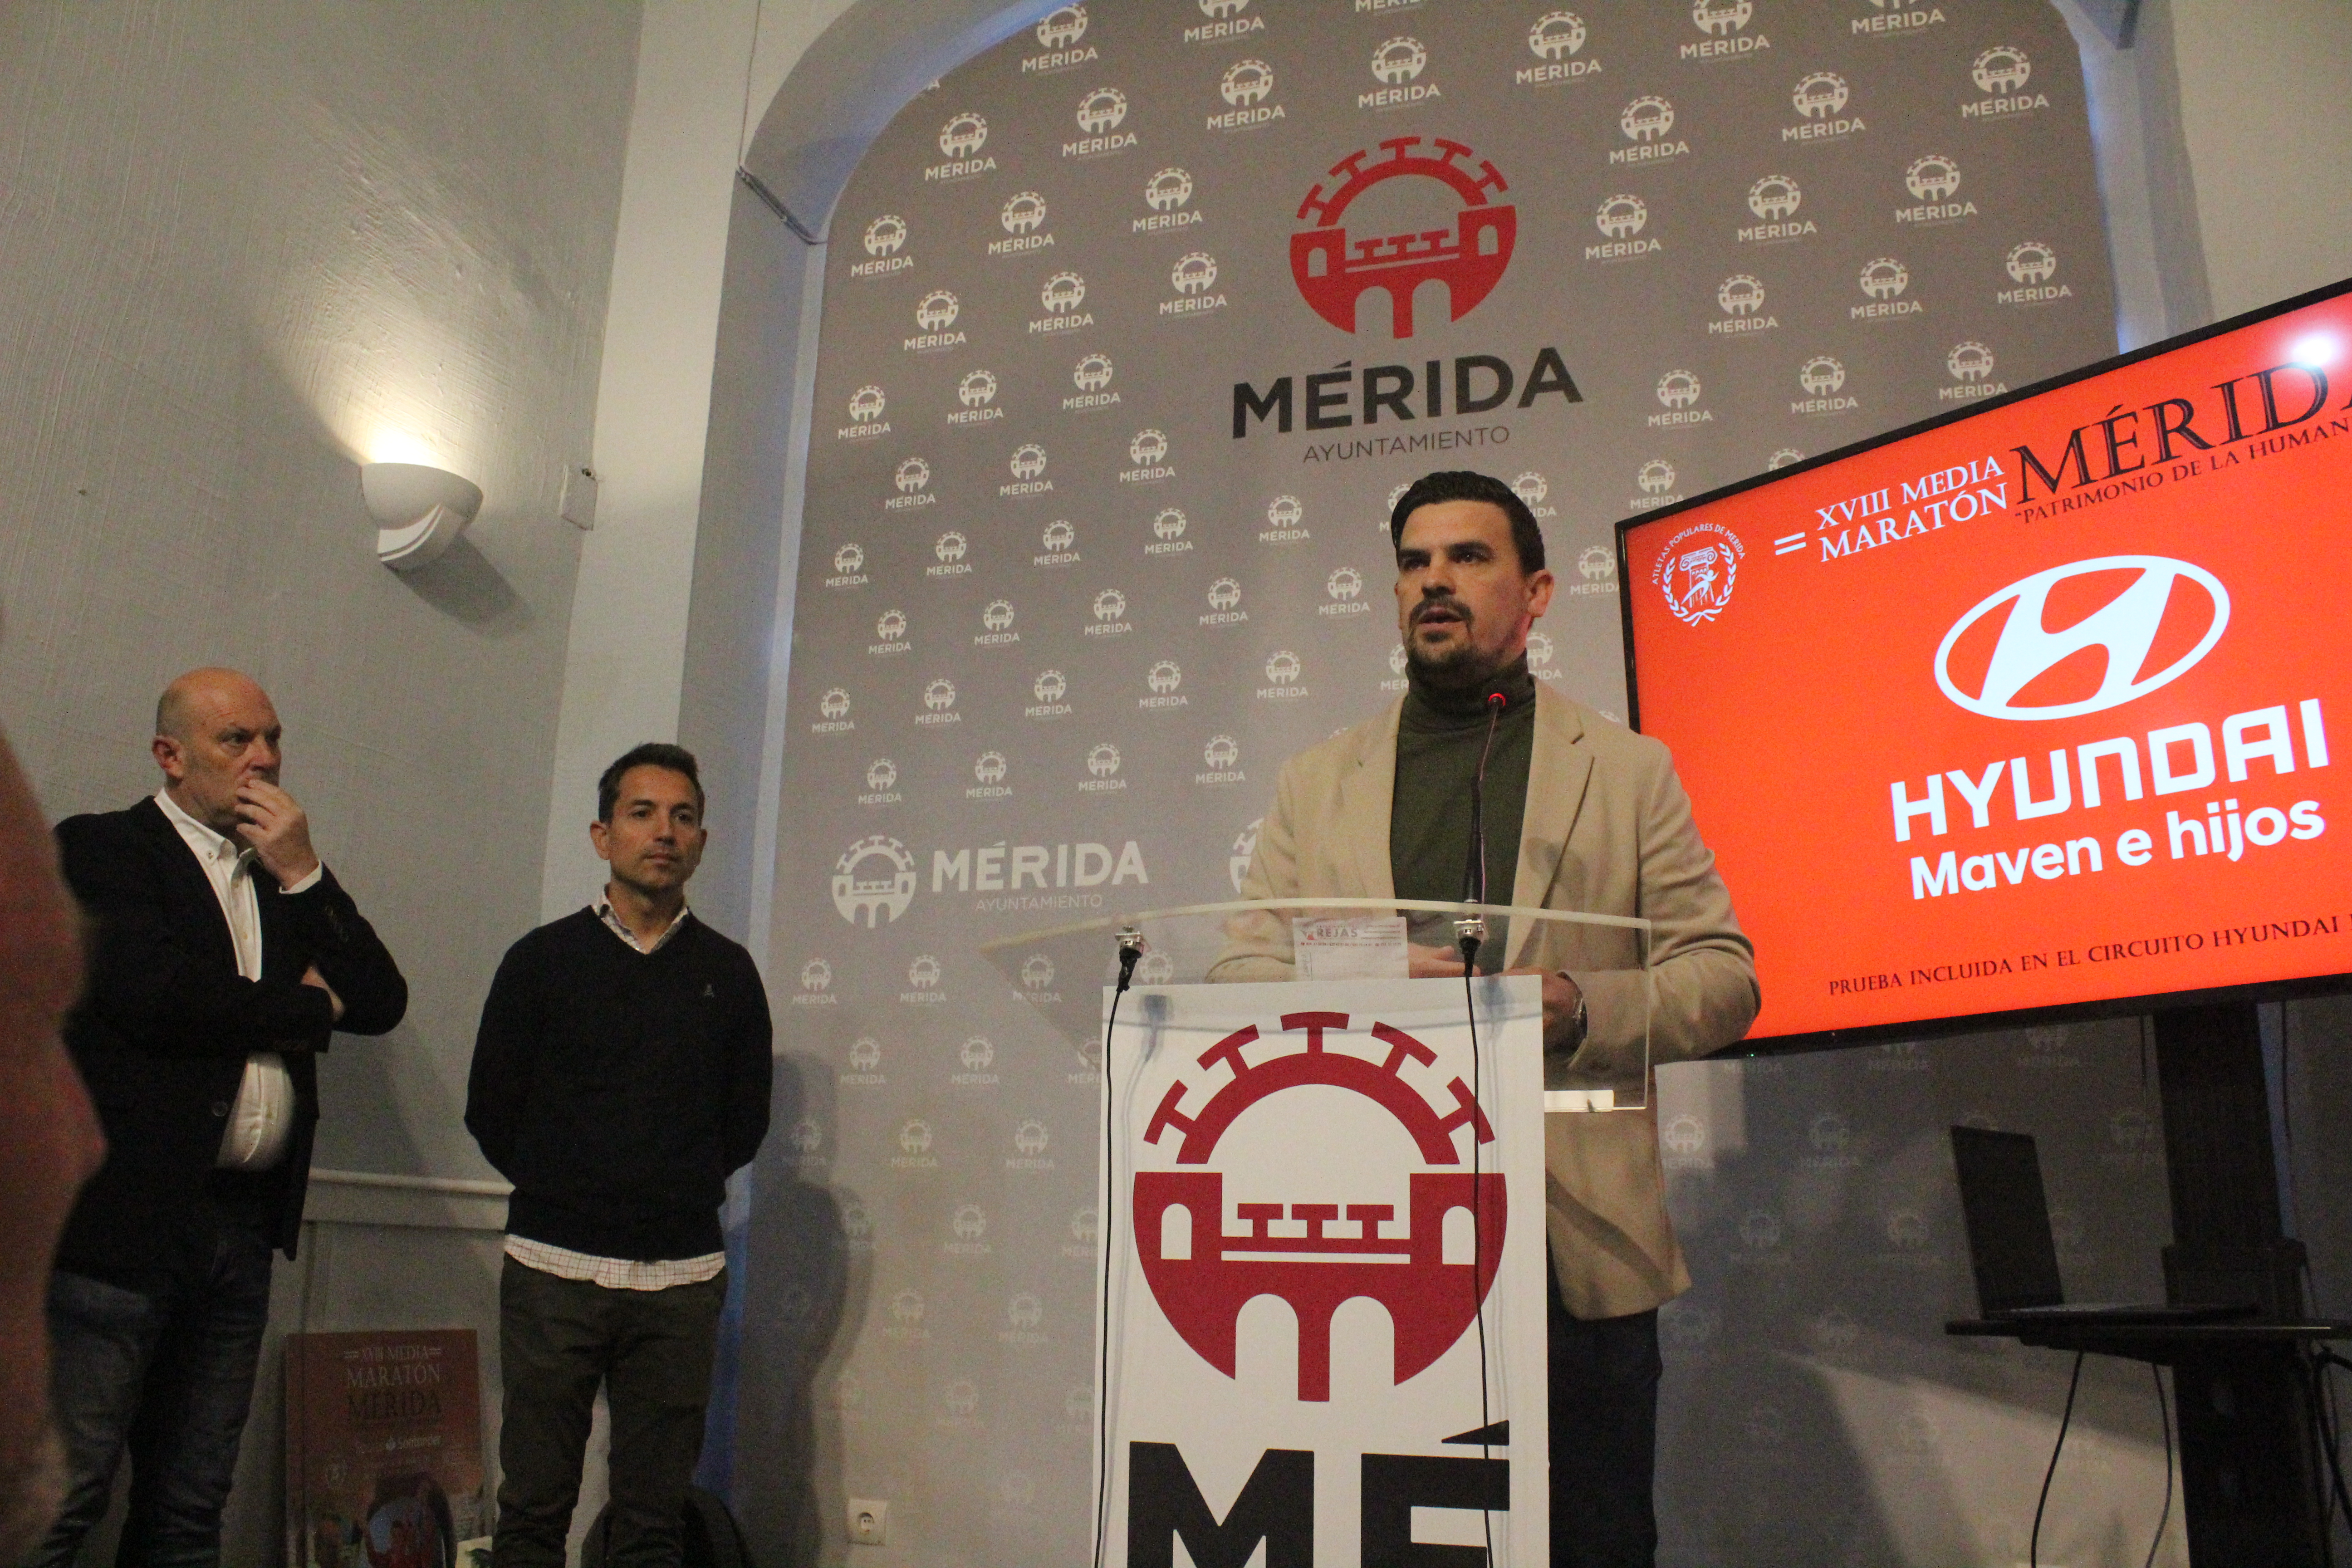 Image 2 of article La Junta subraya la Media Maratón de Mérida como una de las pruebas deportivas destacadas del Circuito Euroace Sport